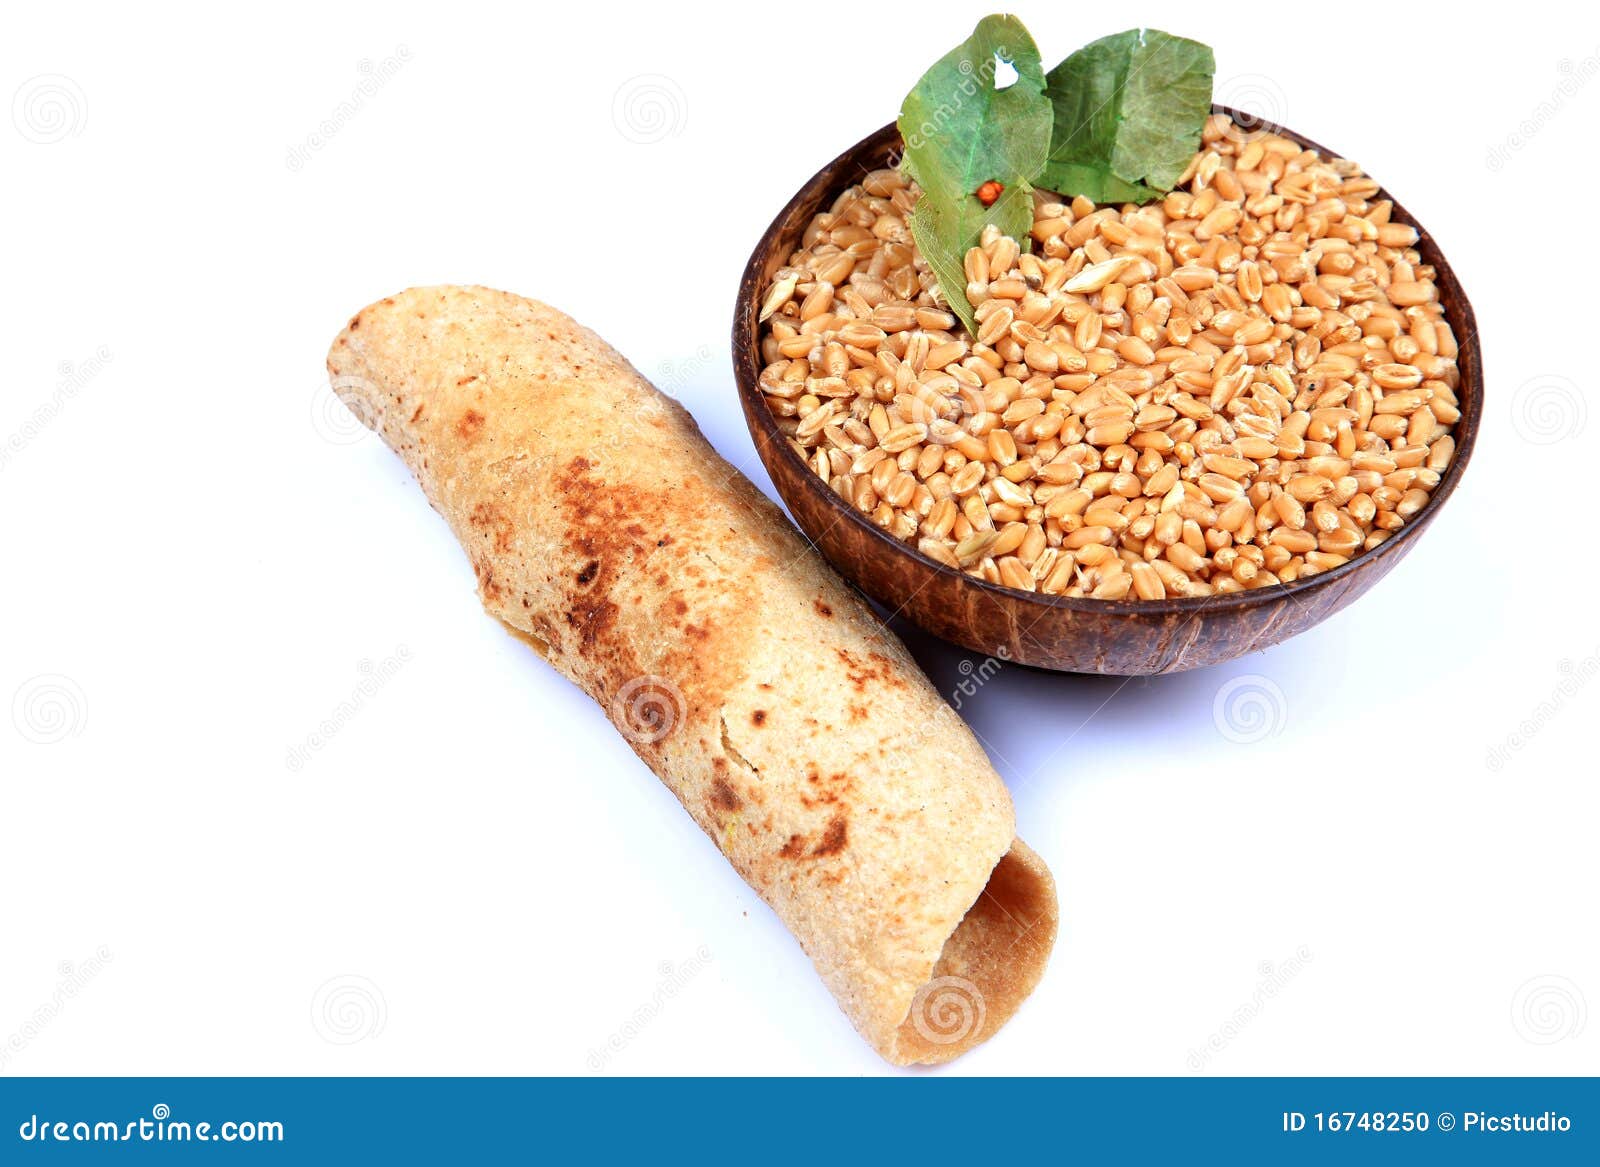 wheat and chapati